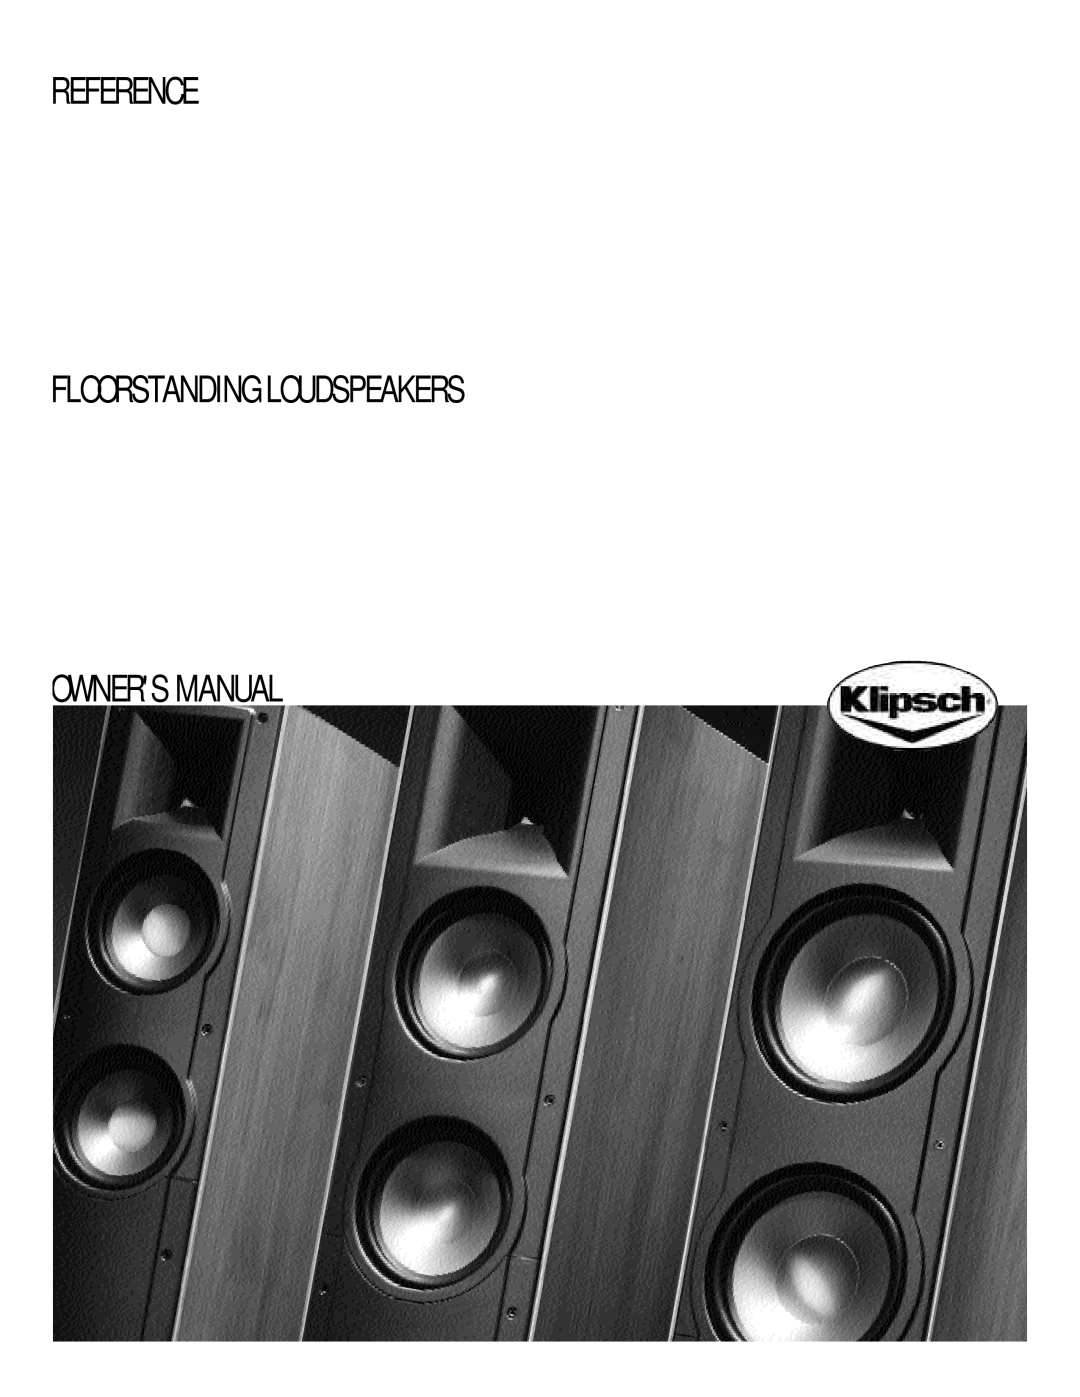 Klipsch Floorstanding Speaker owner manual Reference Floorstanding Loudspeakers 